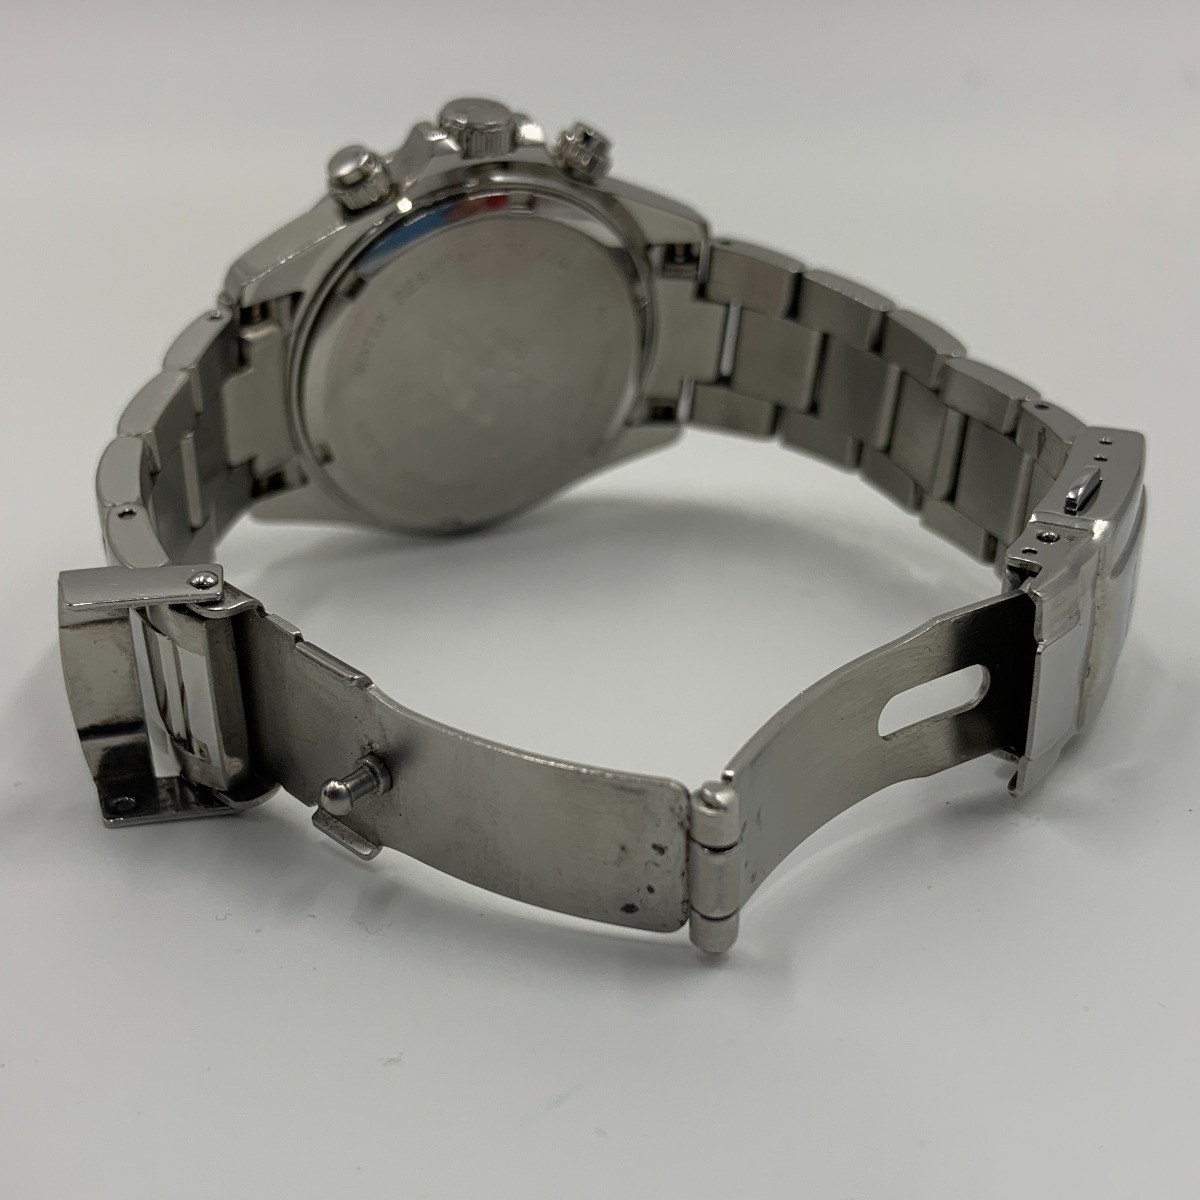 〇〇 TEKNOS テクノス クロノグラフ 腕時計 T4272 シルバー 傷や汚れあり_画像6